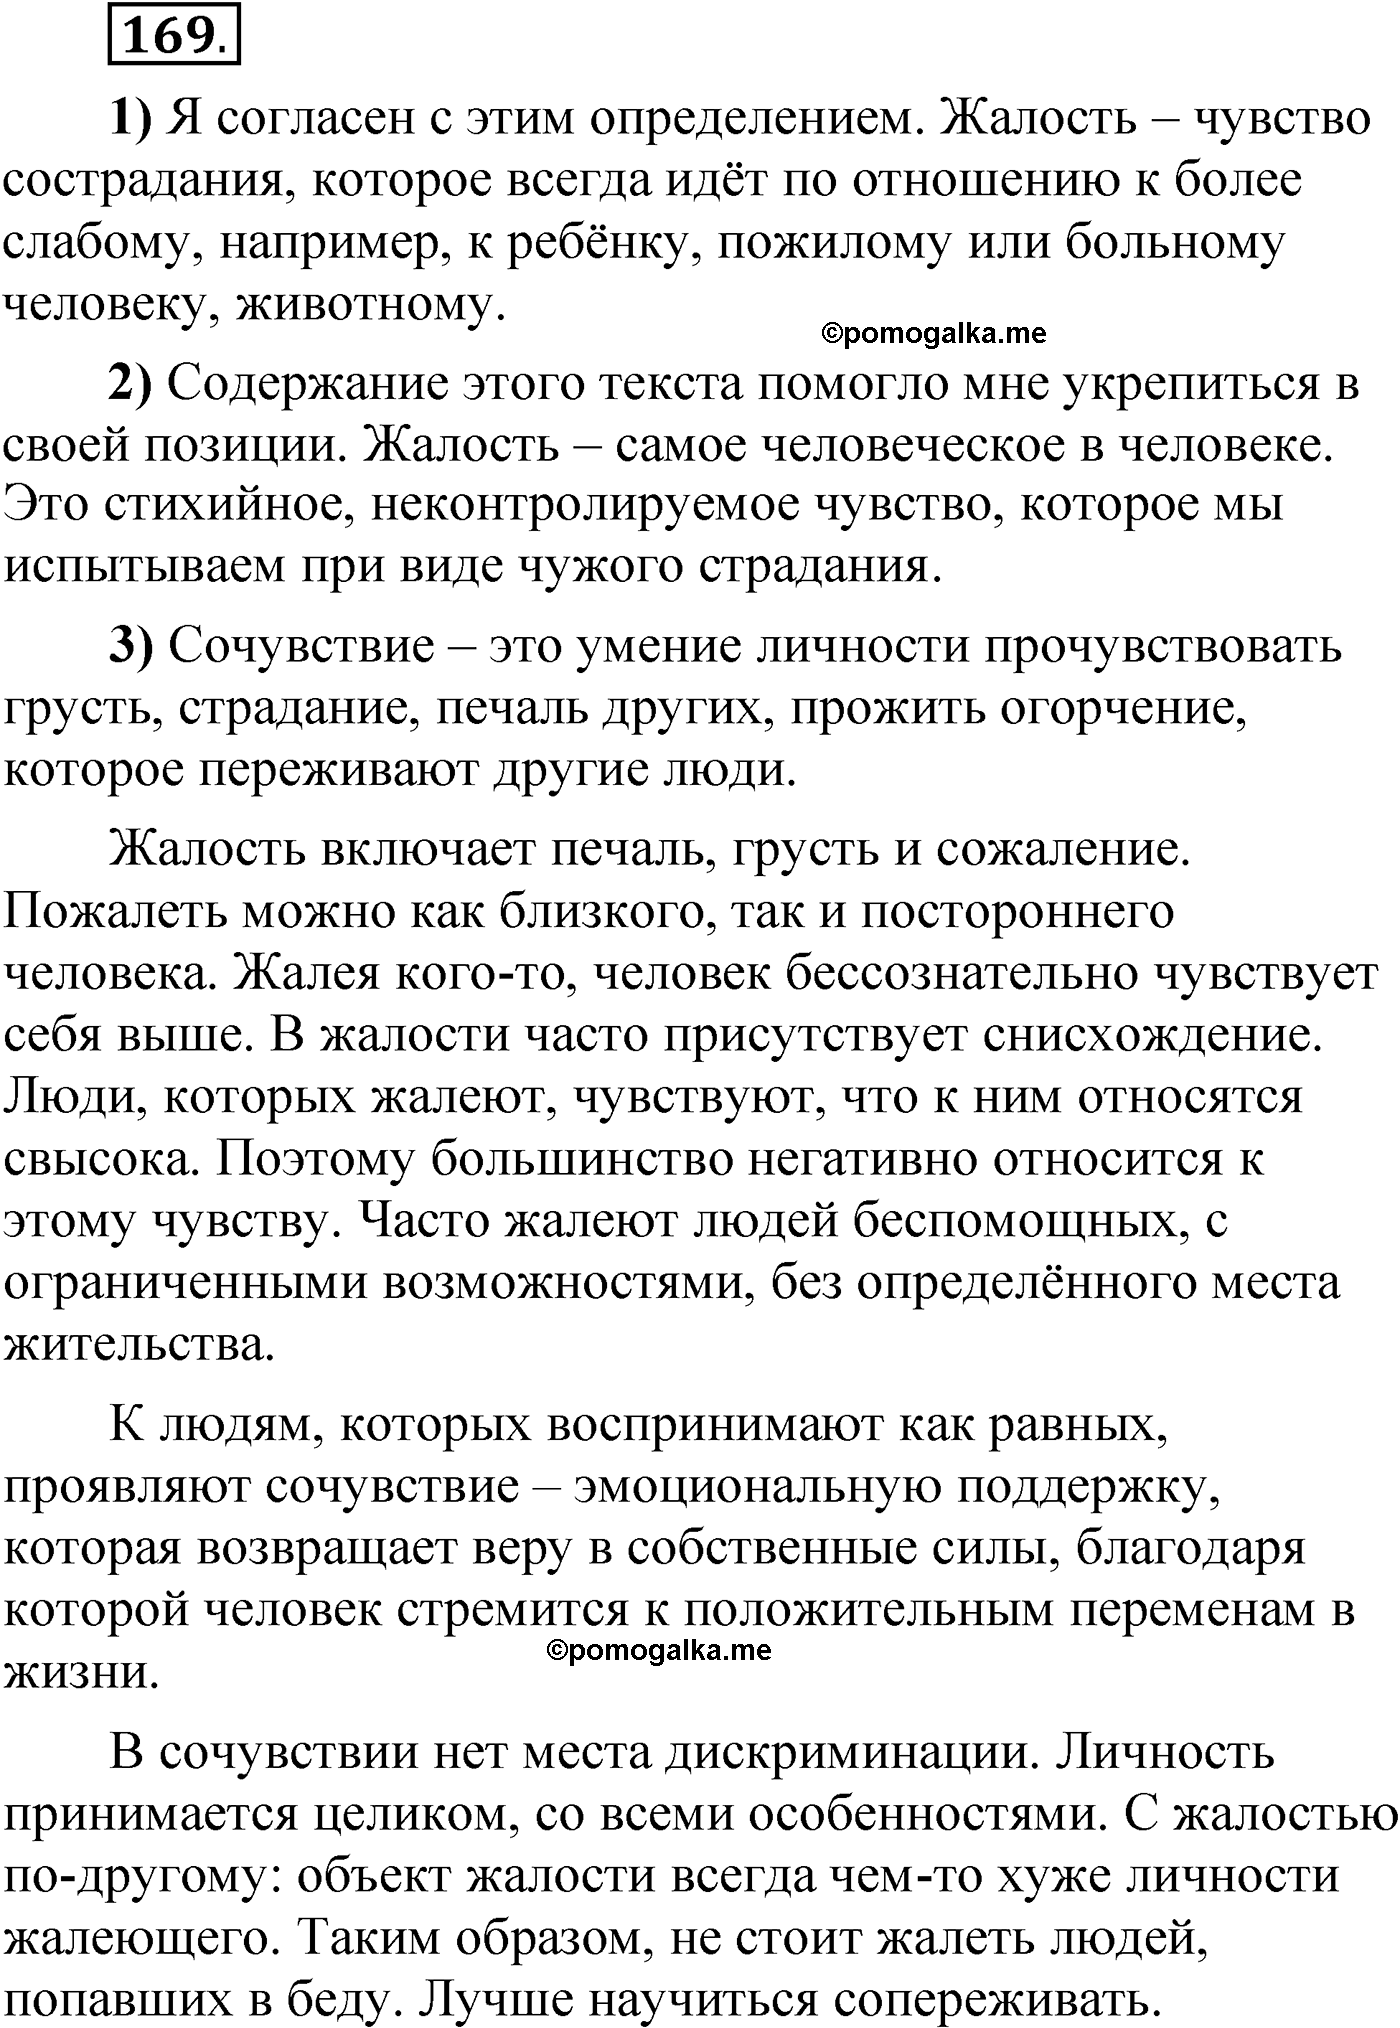 упражнение 169 русский язык 6 класс Александрова 2022